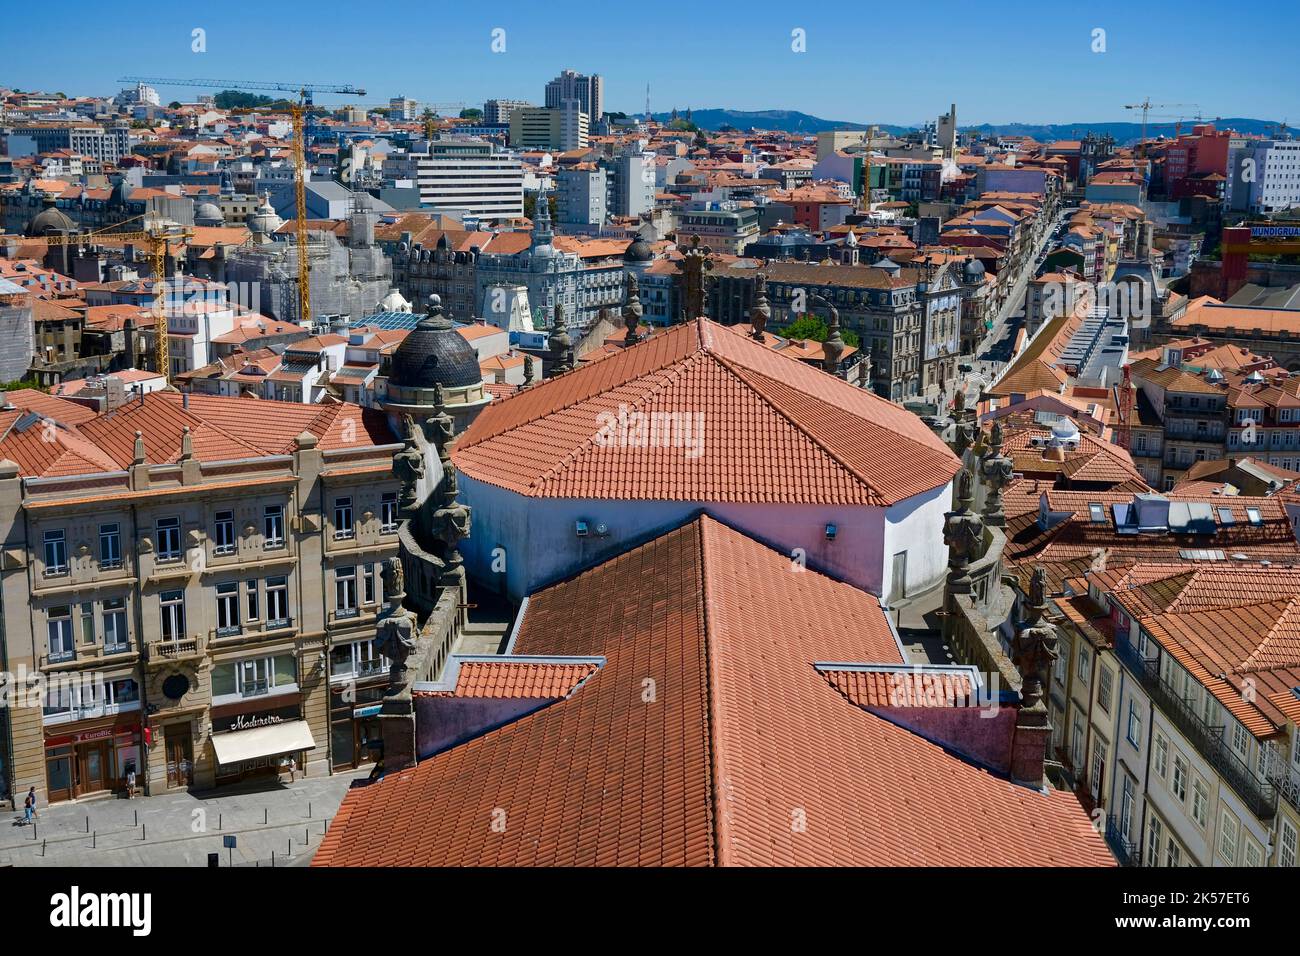 Portugal, région Nord, Porto, centre historique classé au patrimoine mondial de l'UNESCO, la Tour Clerigos (Torre dos Clerigos) construite entre 1754 et 1763, dans le style baroque italien, vue sur le toit de l'église Clerigos Banque D'Images